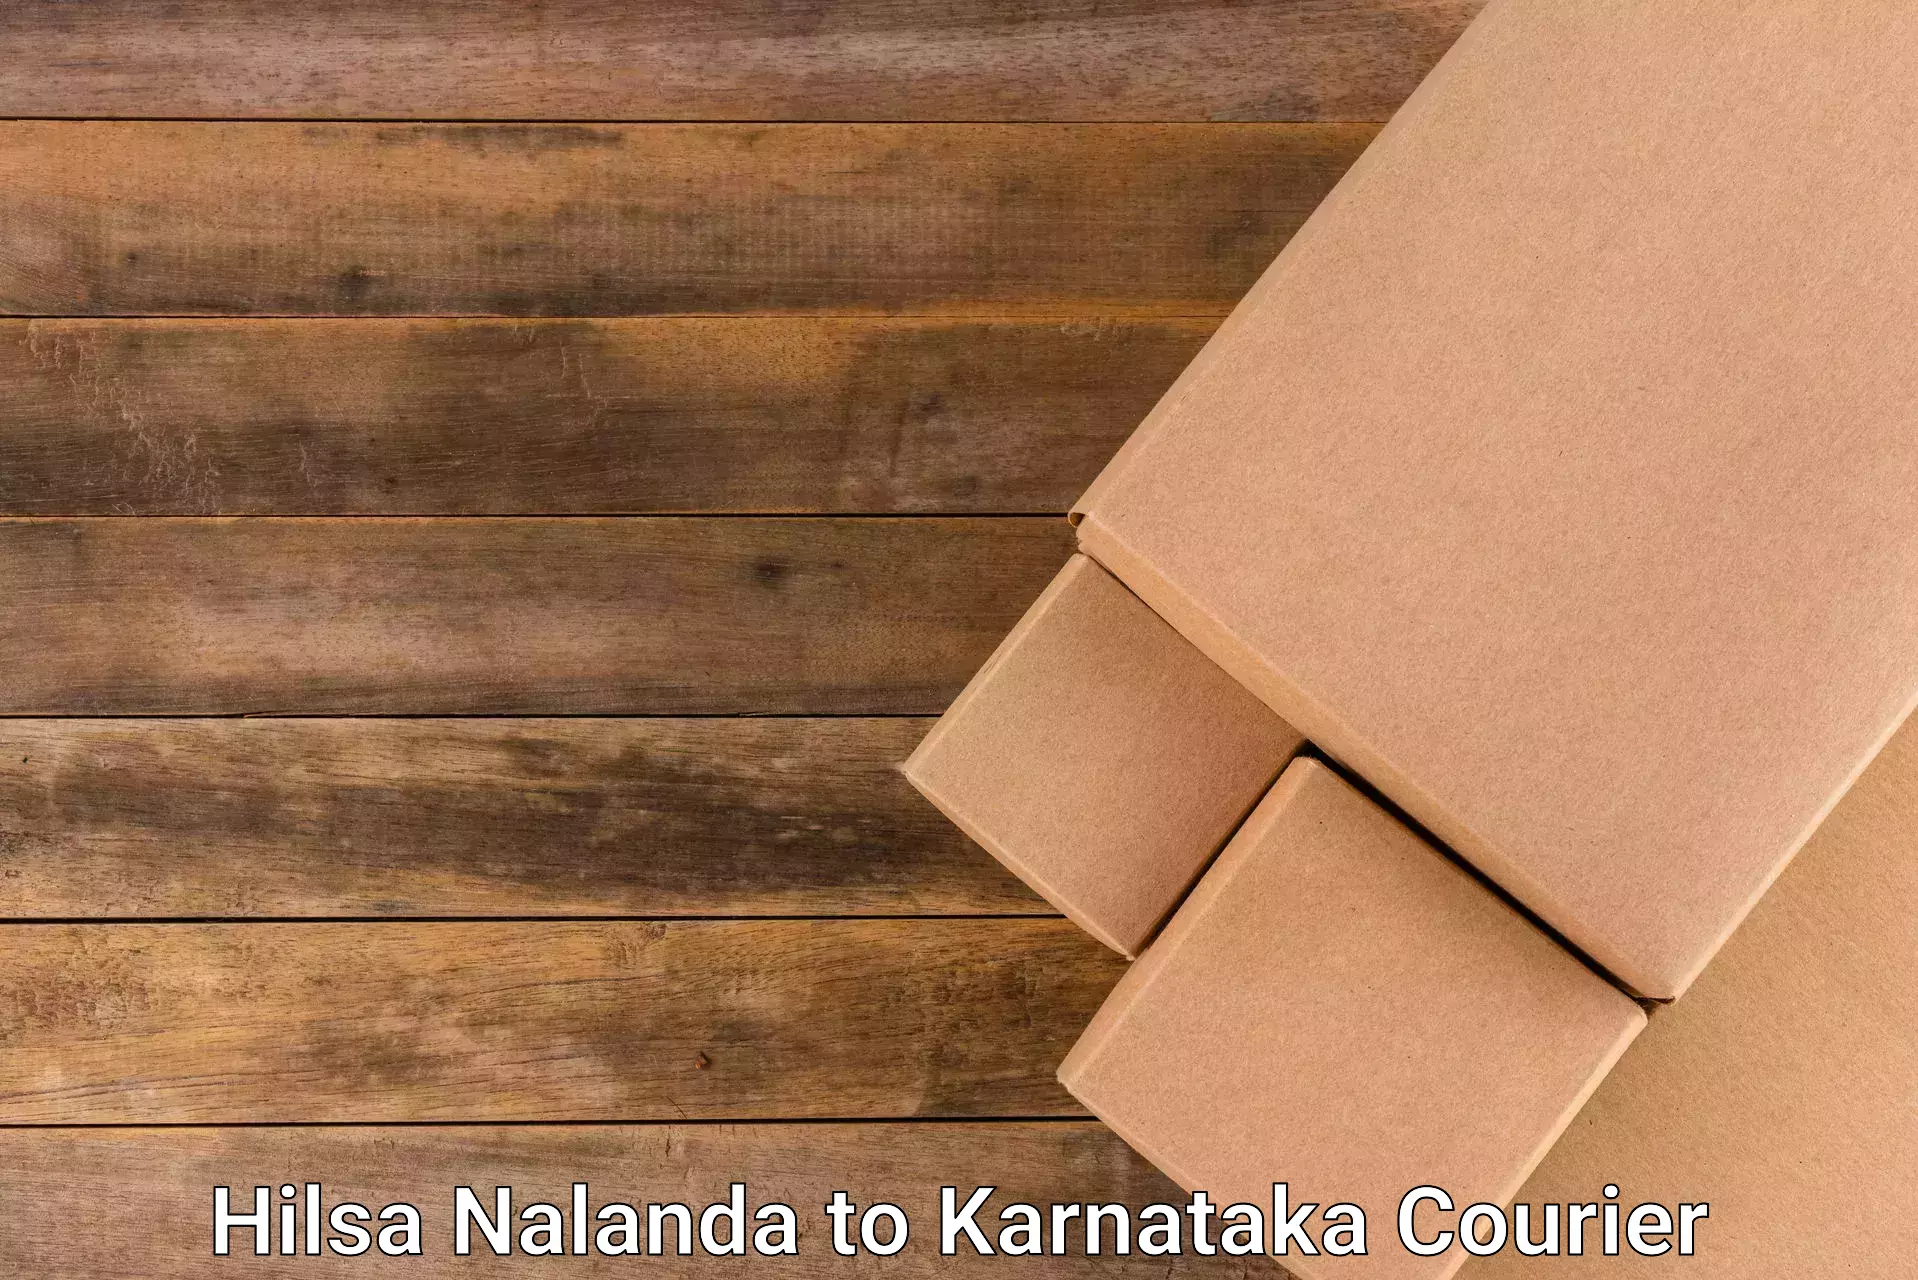 Express courier facilities Hilsa Nalanda to Toranagallu